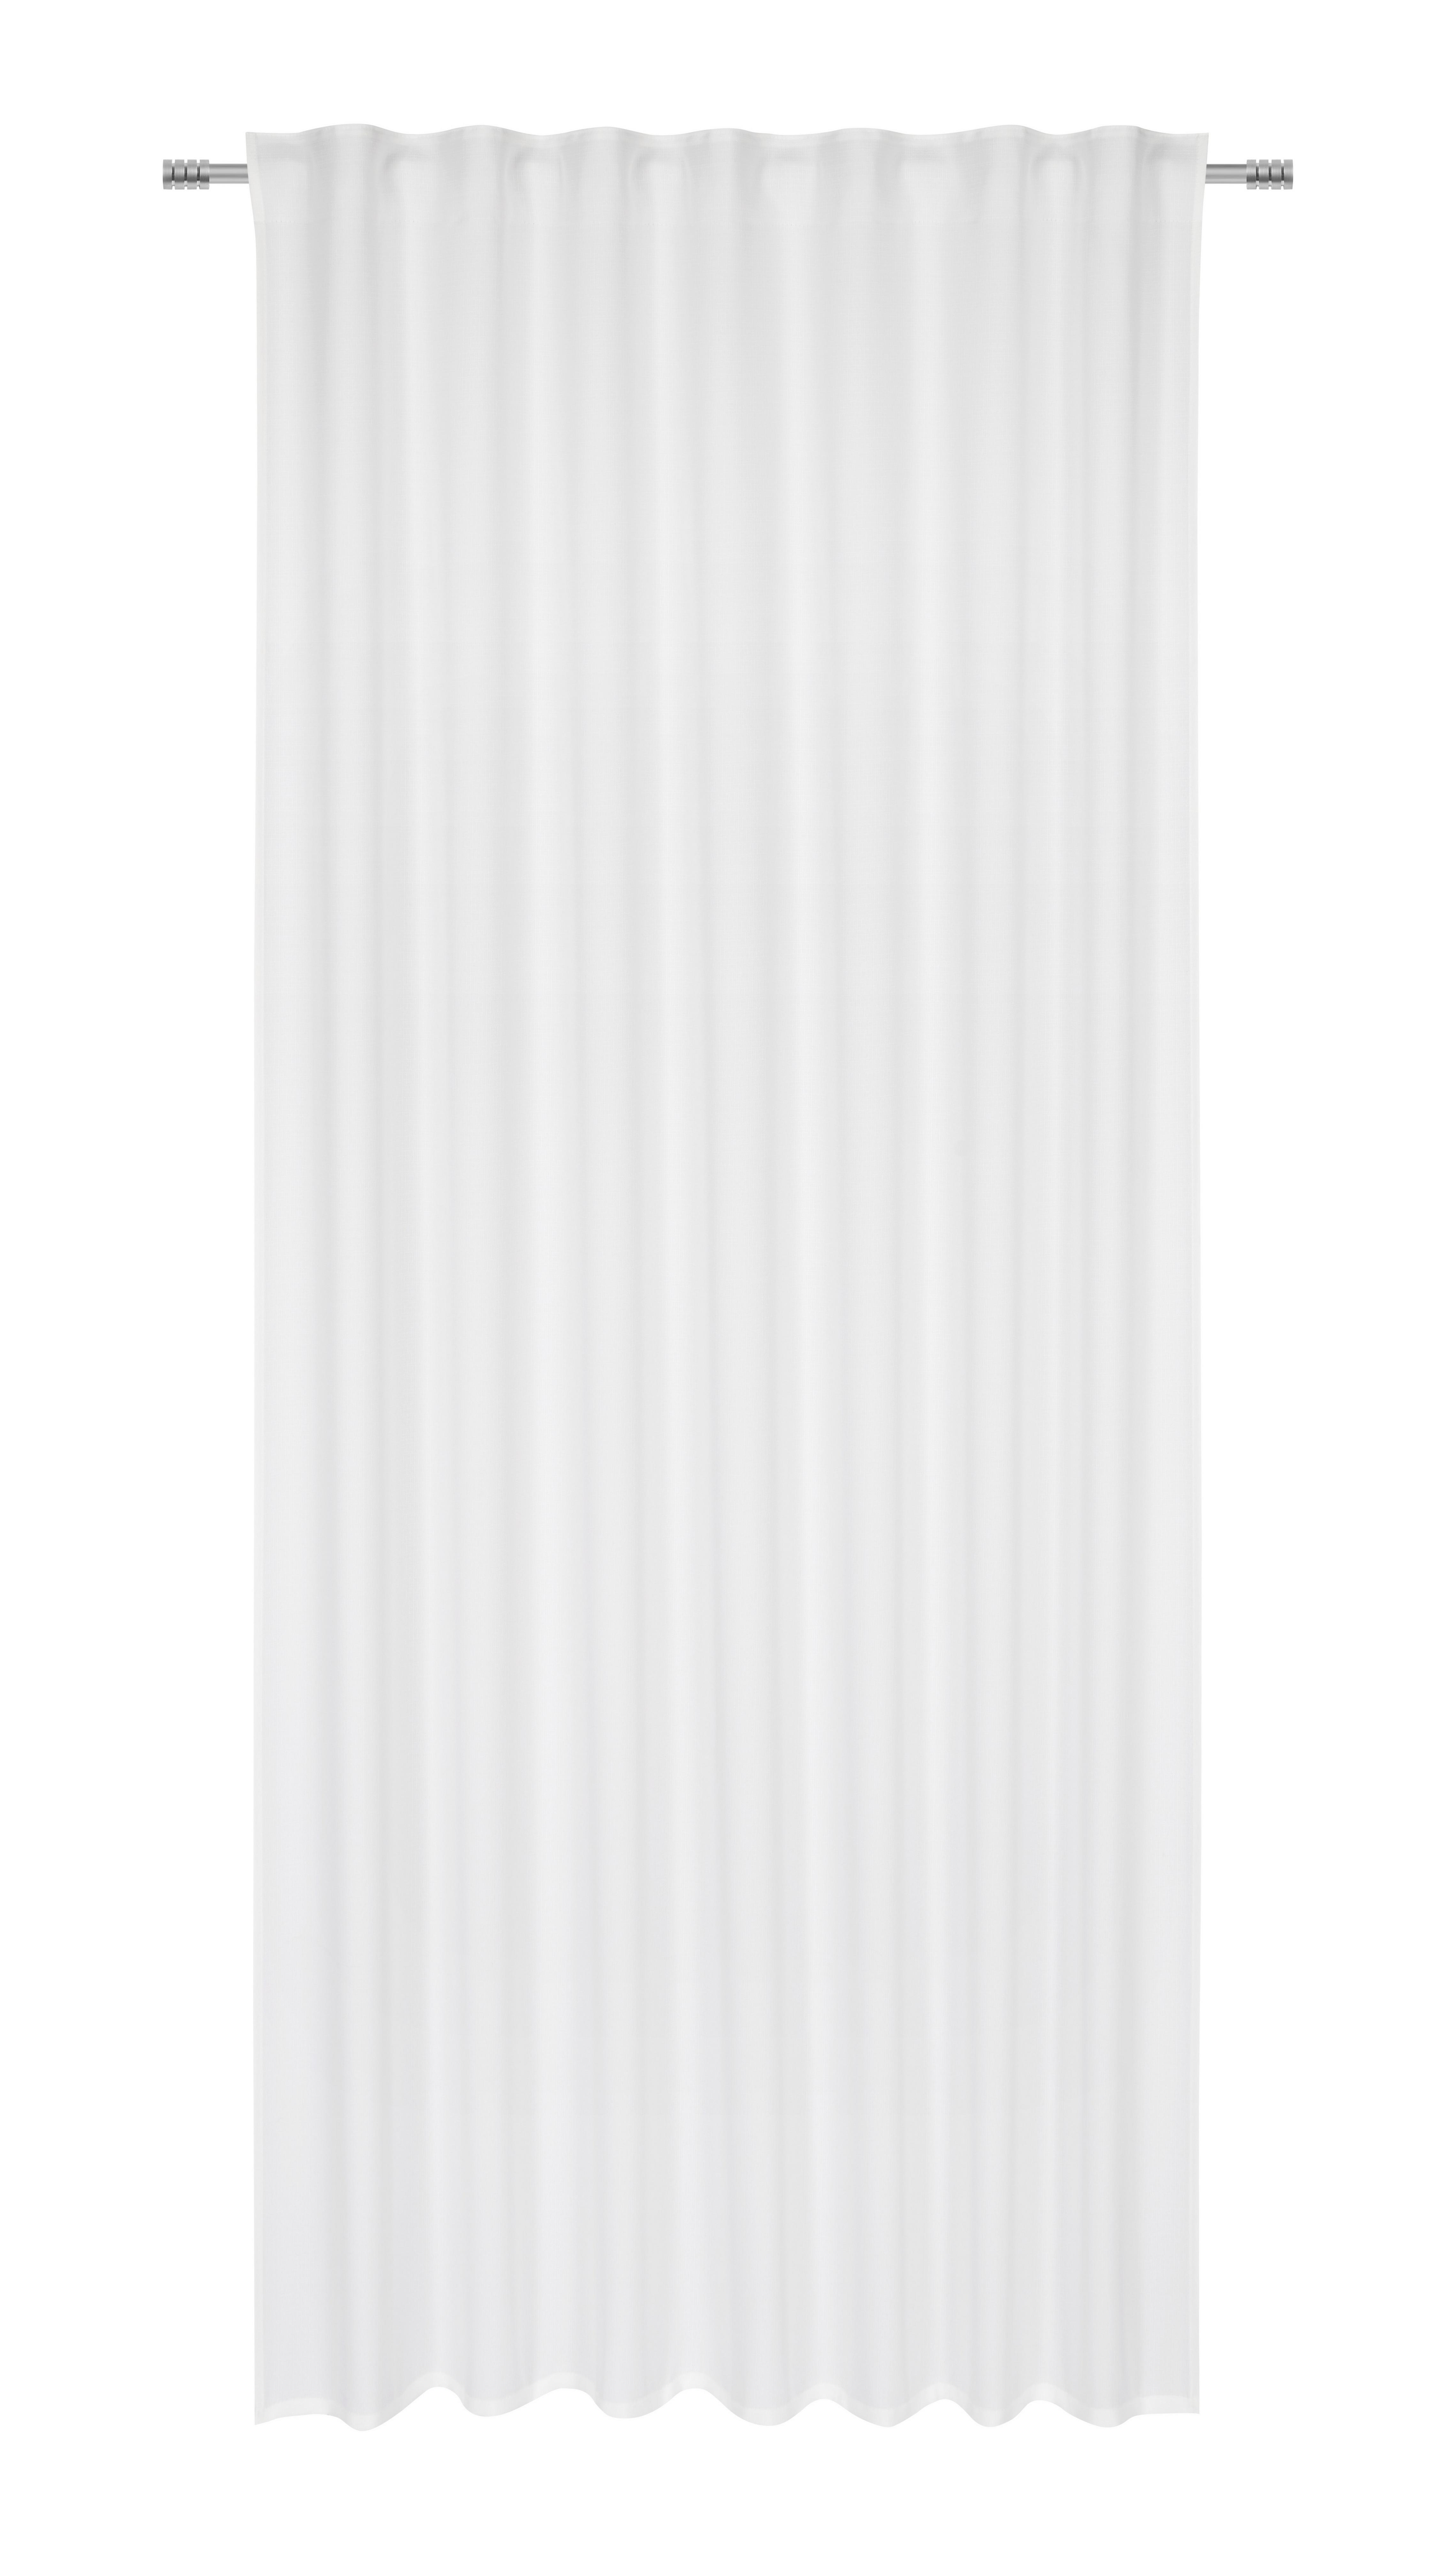 Fertigvorhang Adela in Weiß ca. 140x245cm - Weiß, ROMANTIK / LANDHAUS, Kunststoff (140/245cm) - Bessagi Home